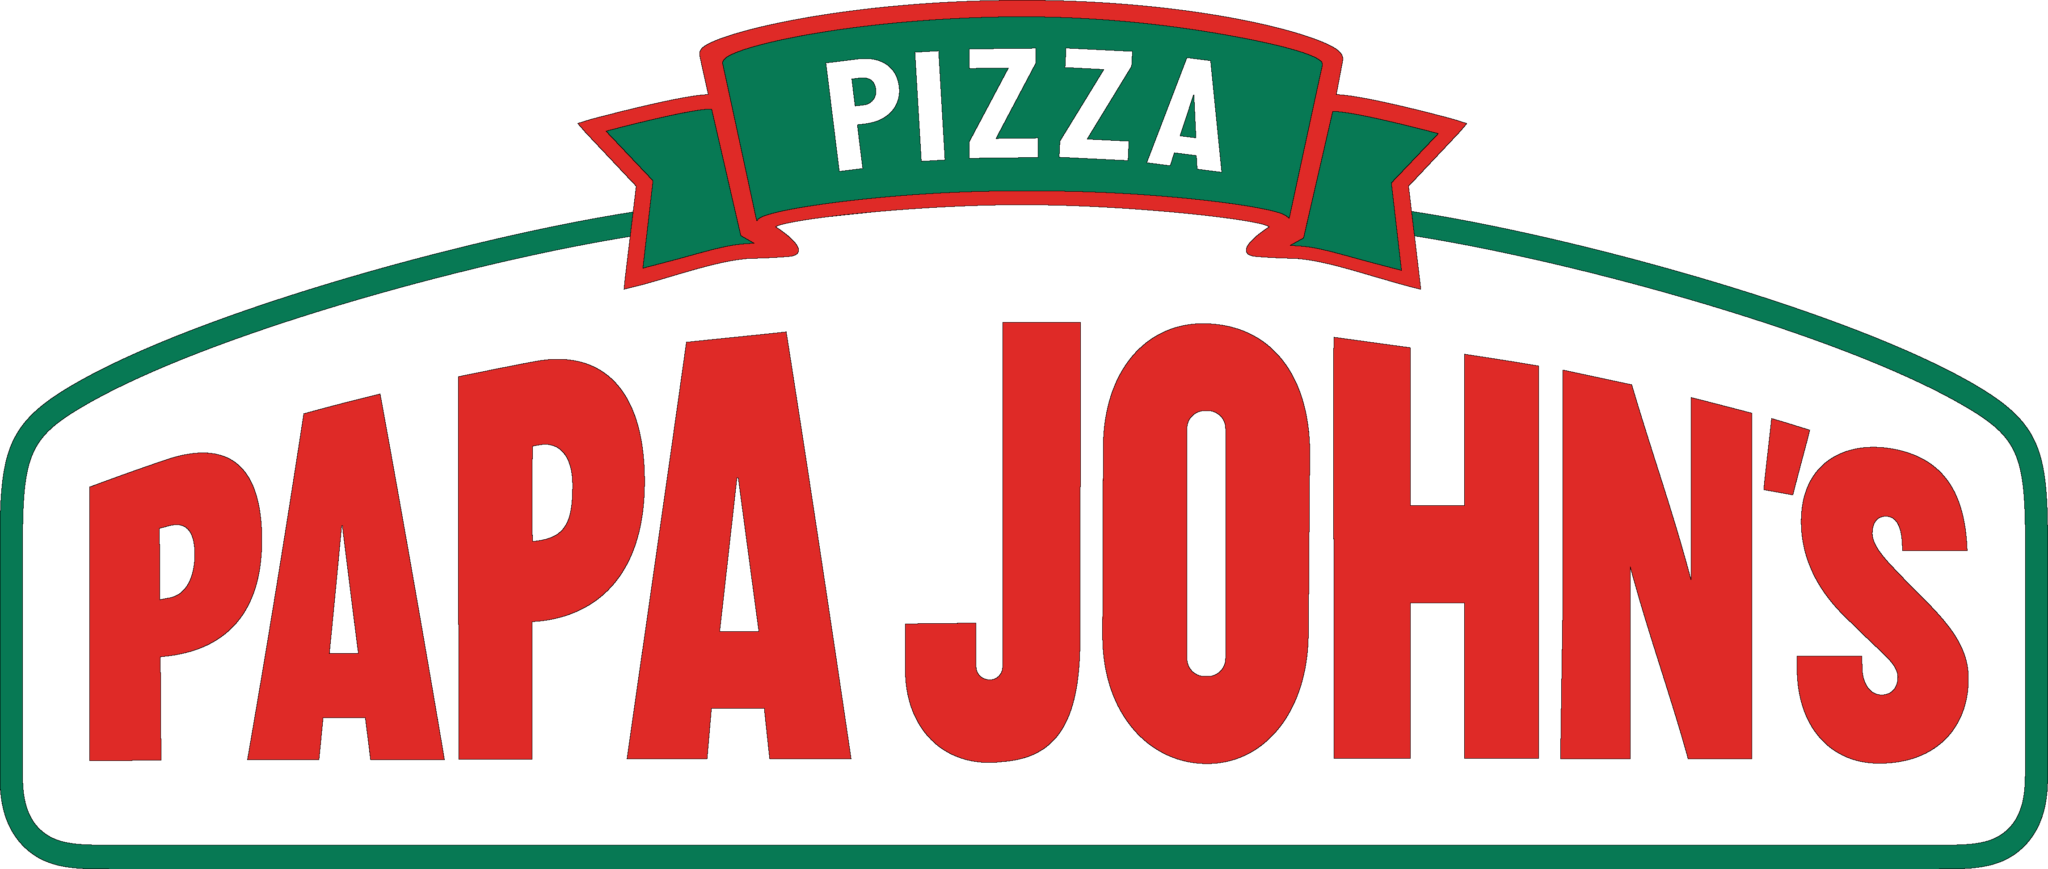 Папас урай. Папа Джонс пицца лого. Папа Джонс логотип. Пицца папа Джонс эмблема. Папа пицца логотип.